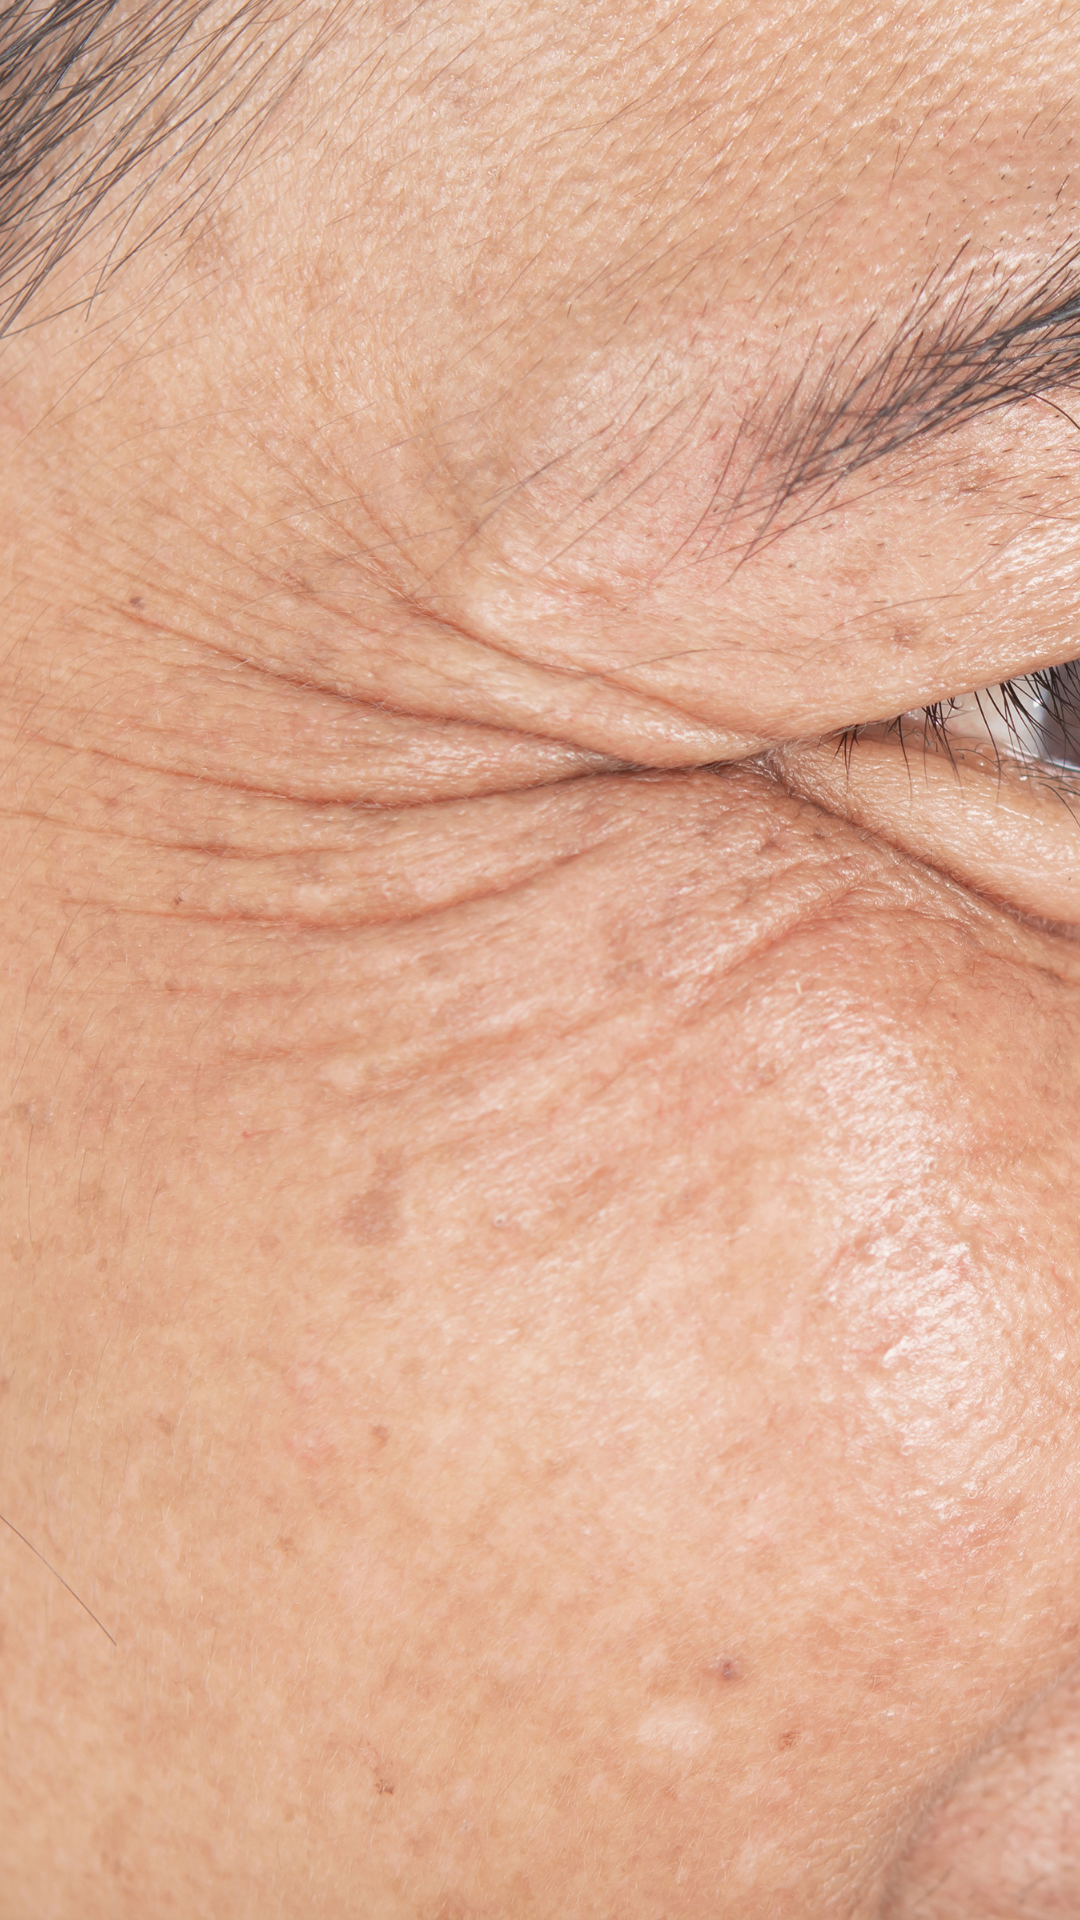 Aging / Wrinkles